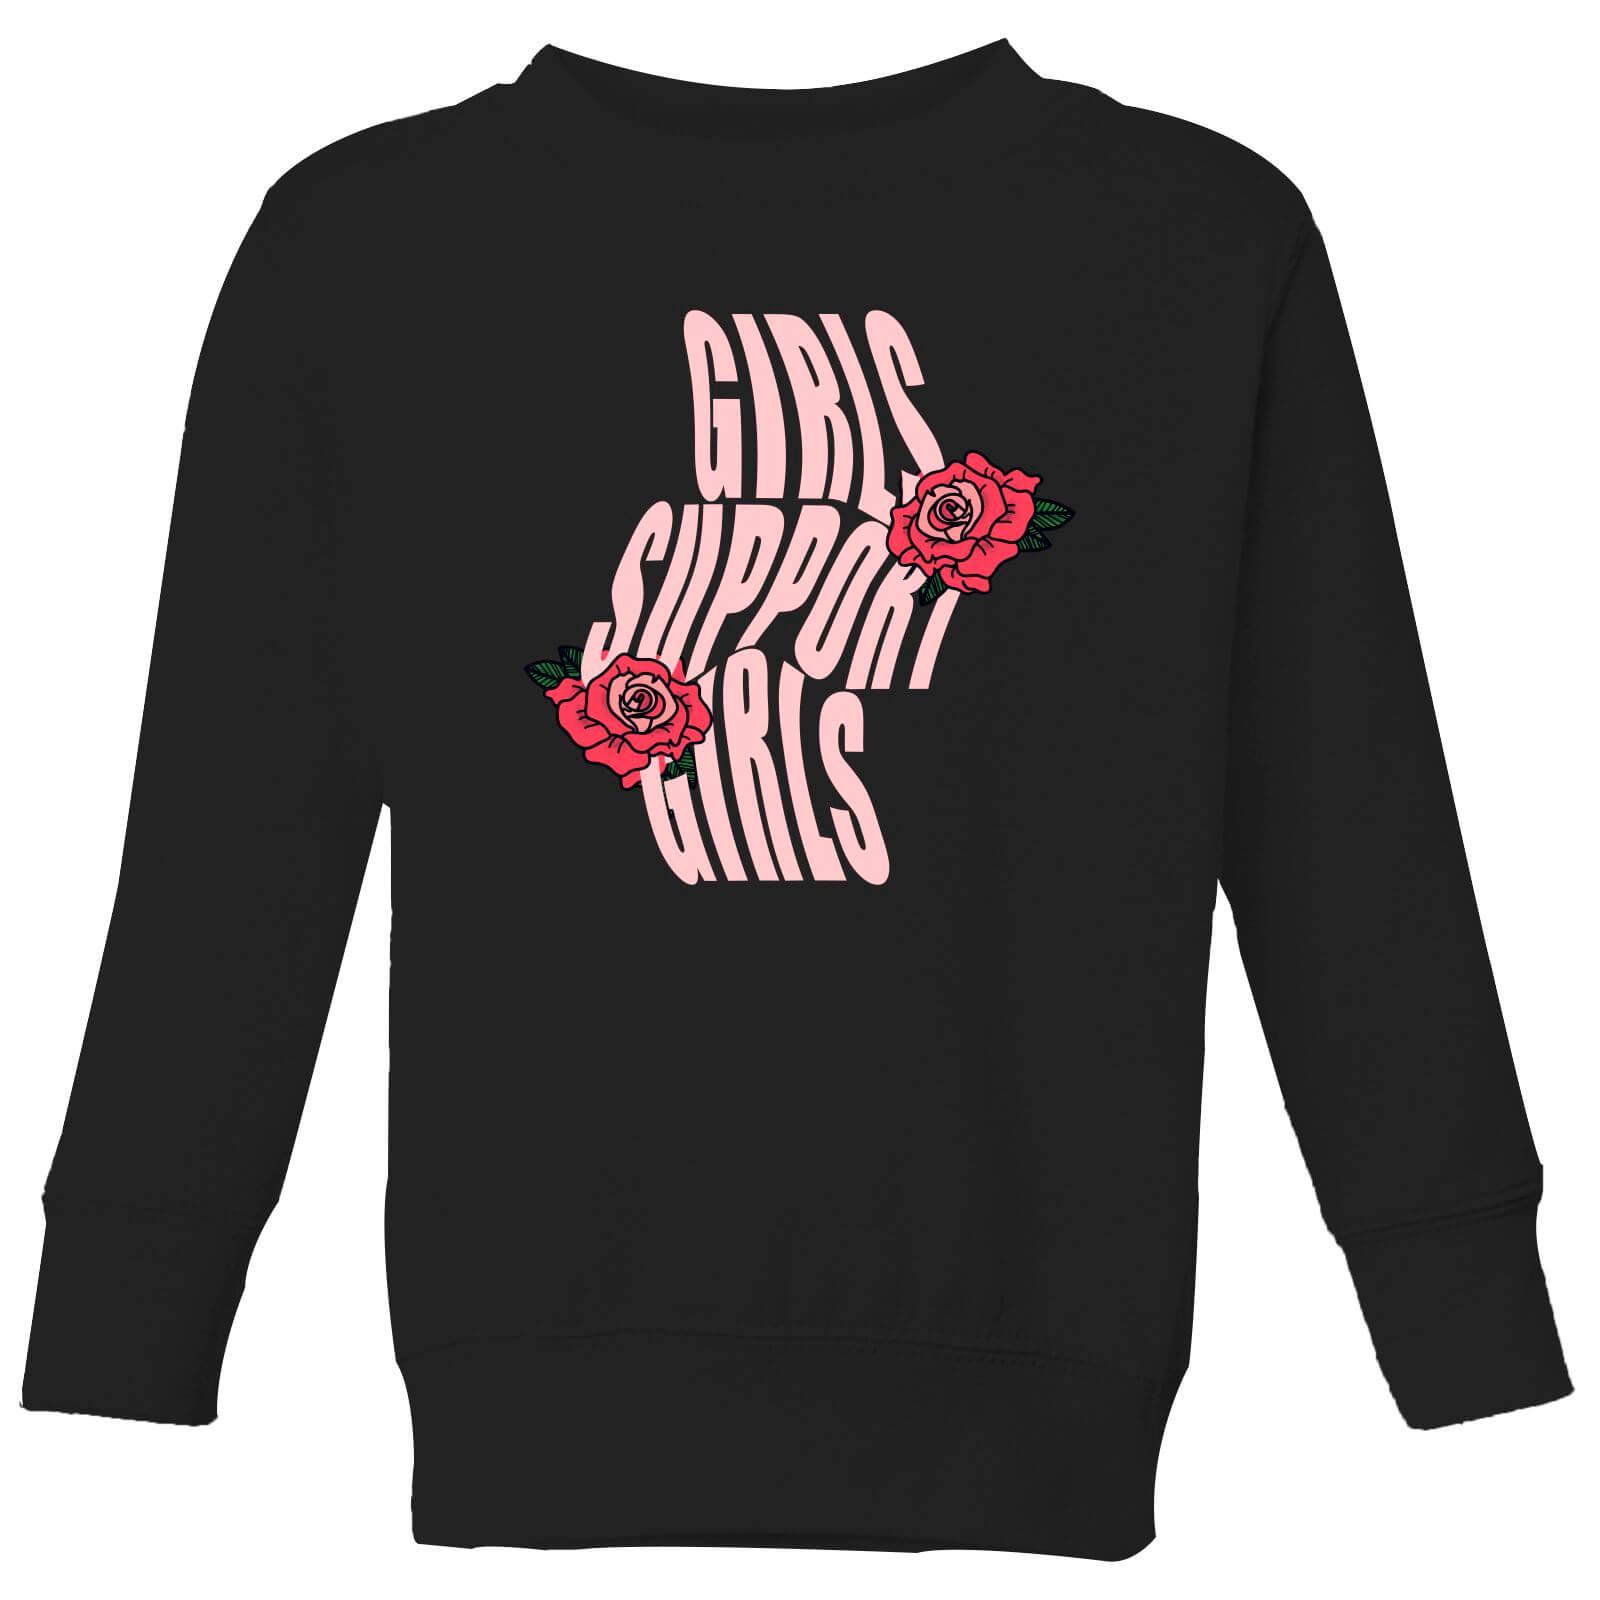 Girls Support Girls Kids' Sweatshirt - Black - 3-4 Years - Black